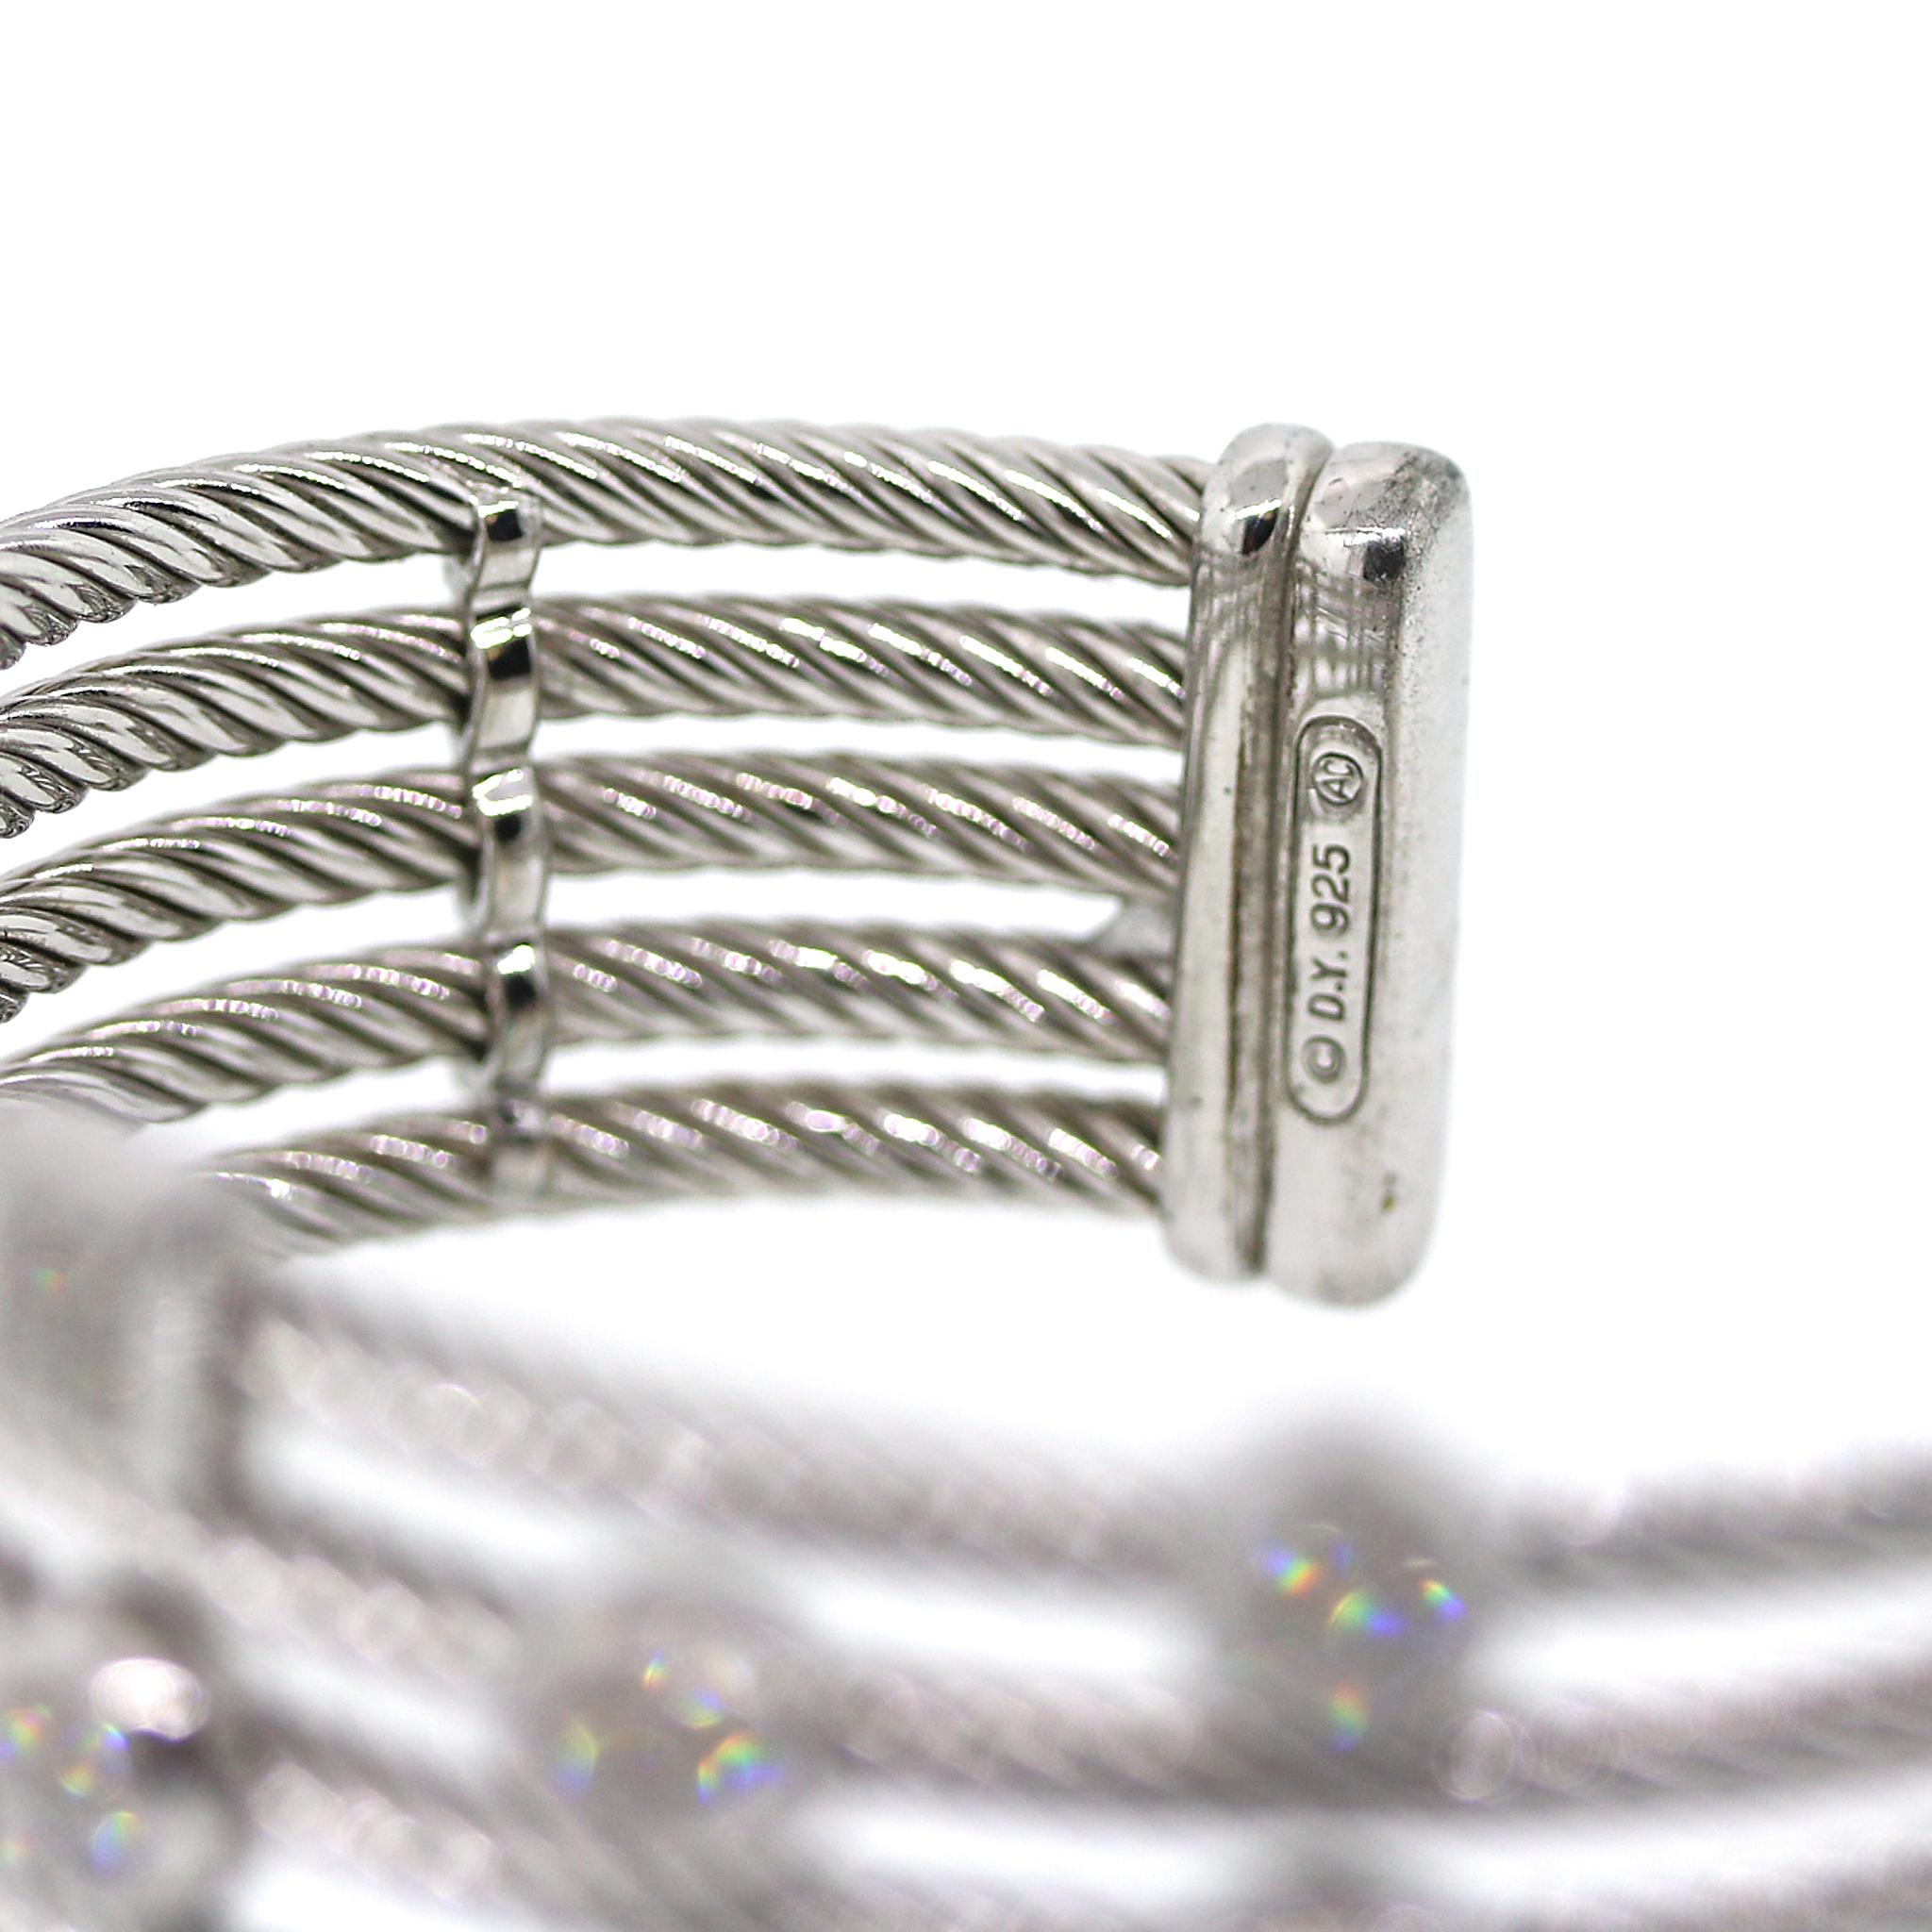  David Yurman Diamond Five Row Confetti Bracelet in Sterling Silver For Sale 2